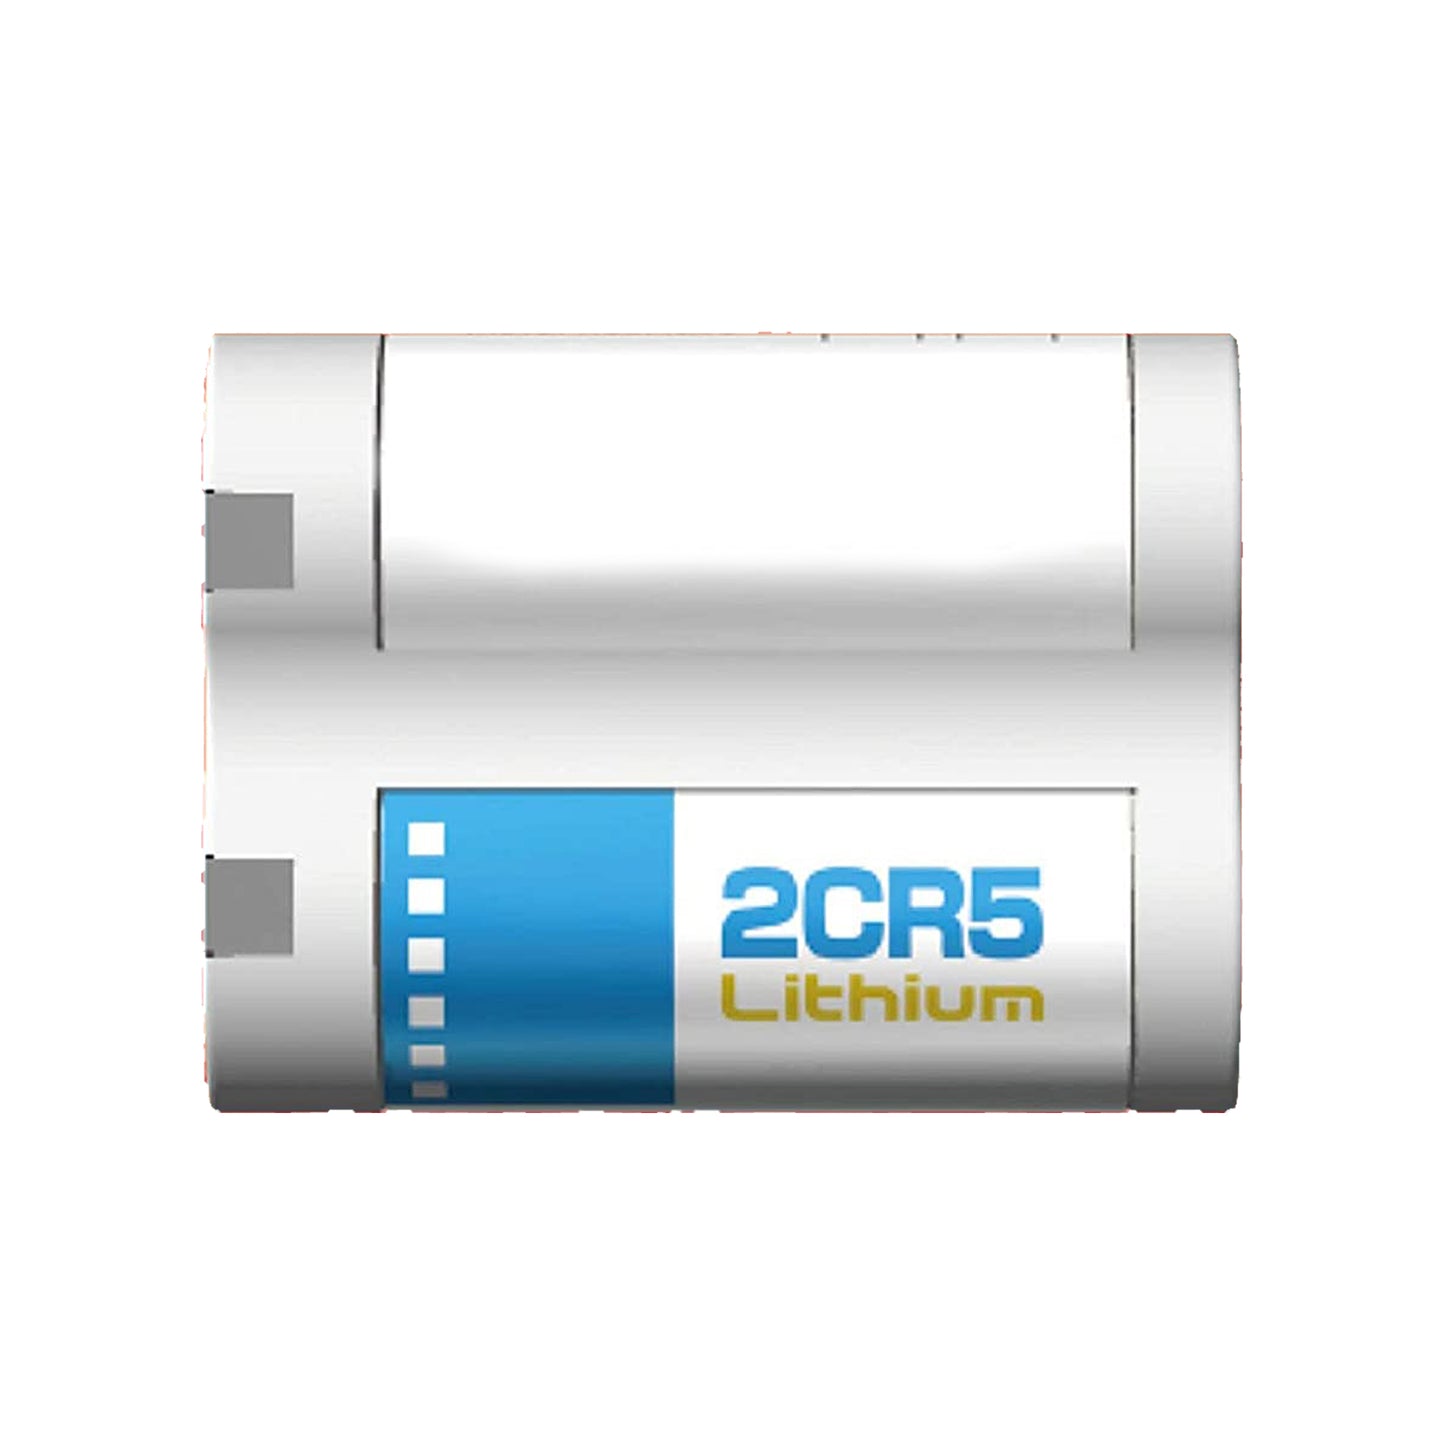 Battery 2CR5